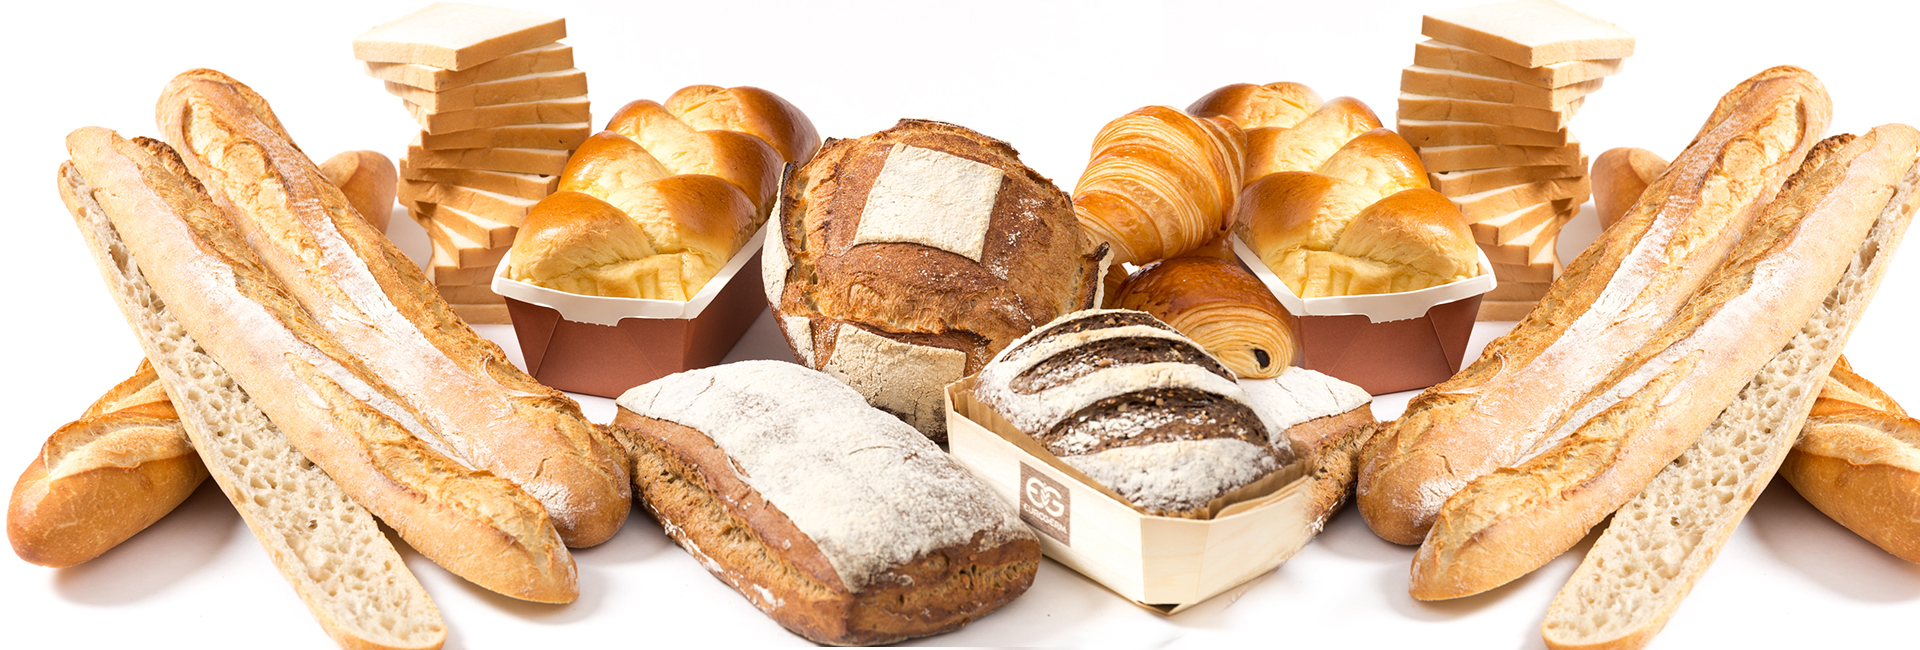 Para la cadena trigo – harina – pan - pastelería